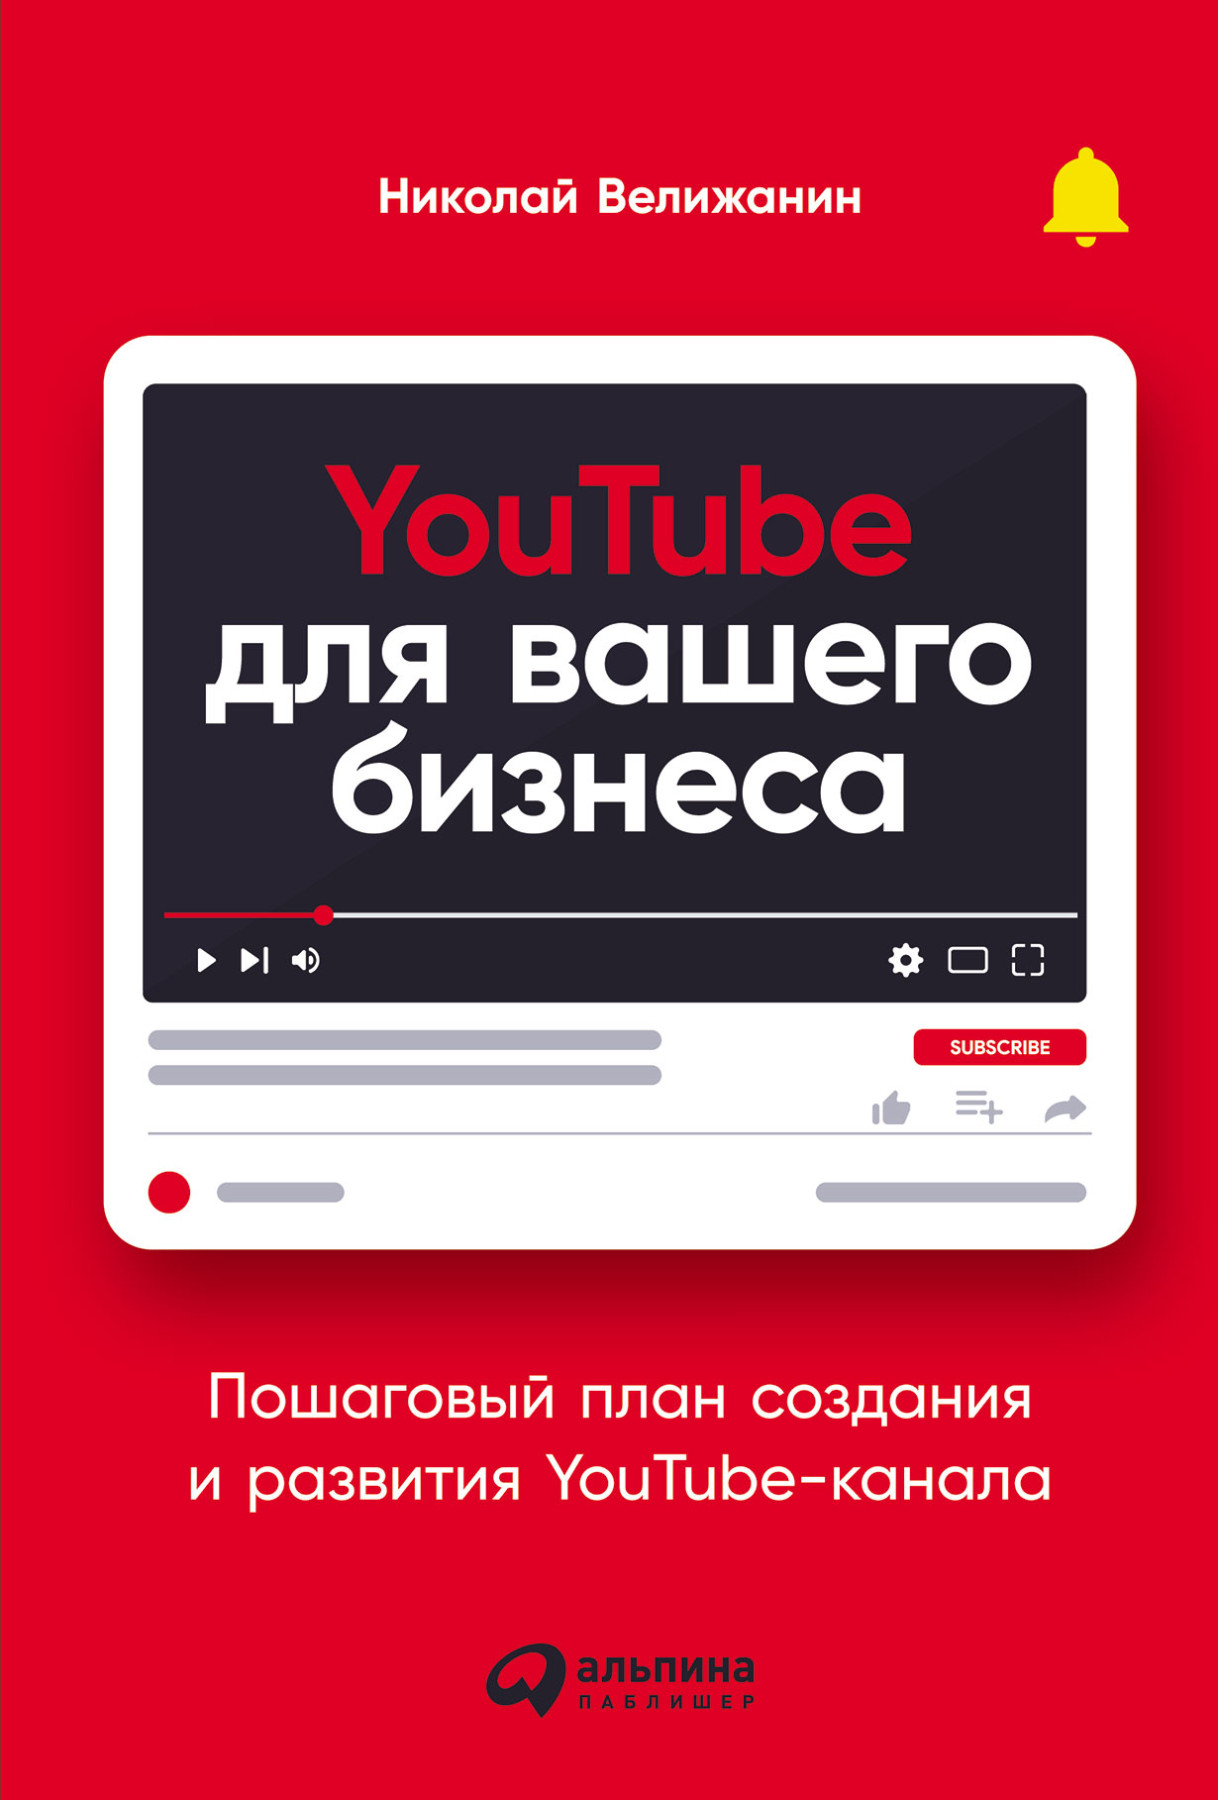 YouTube для вашего бизнеса обложка.